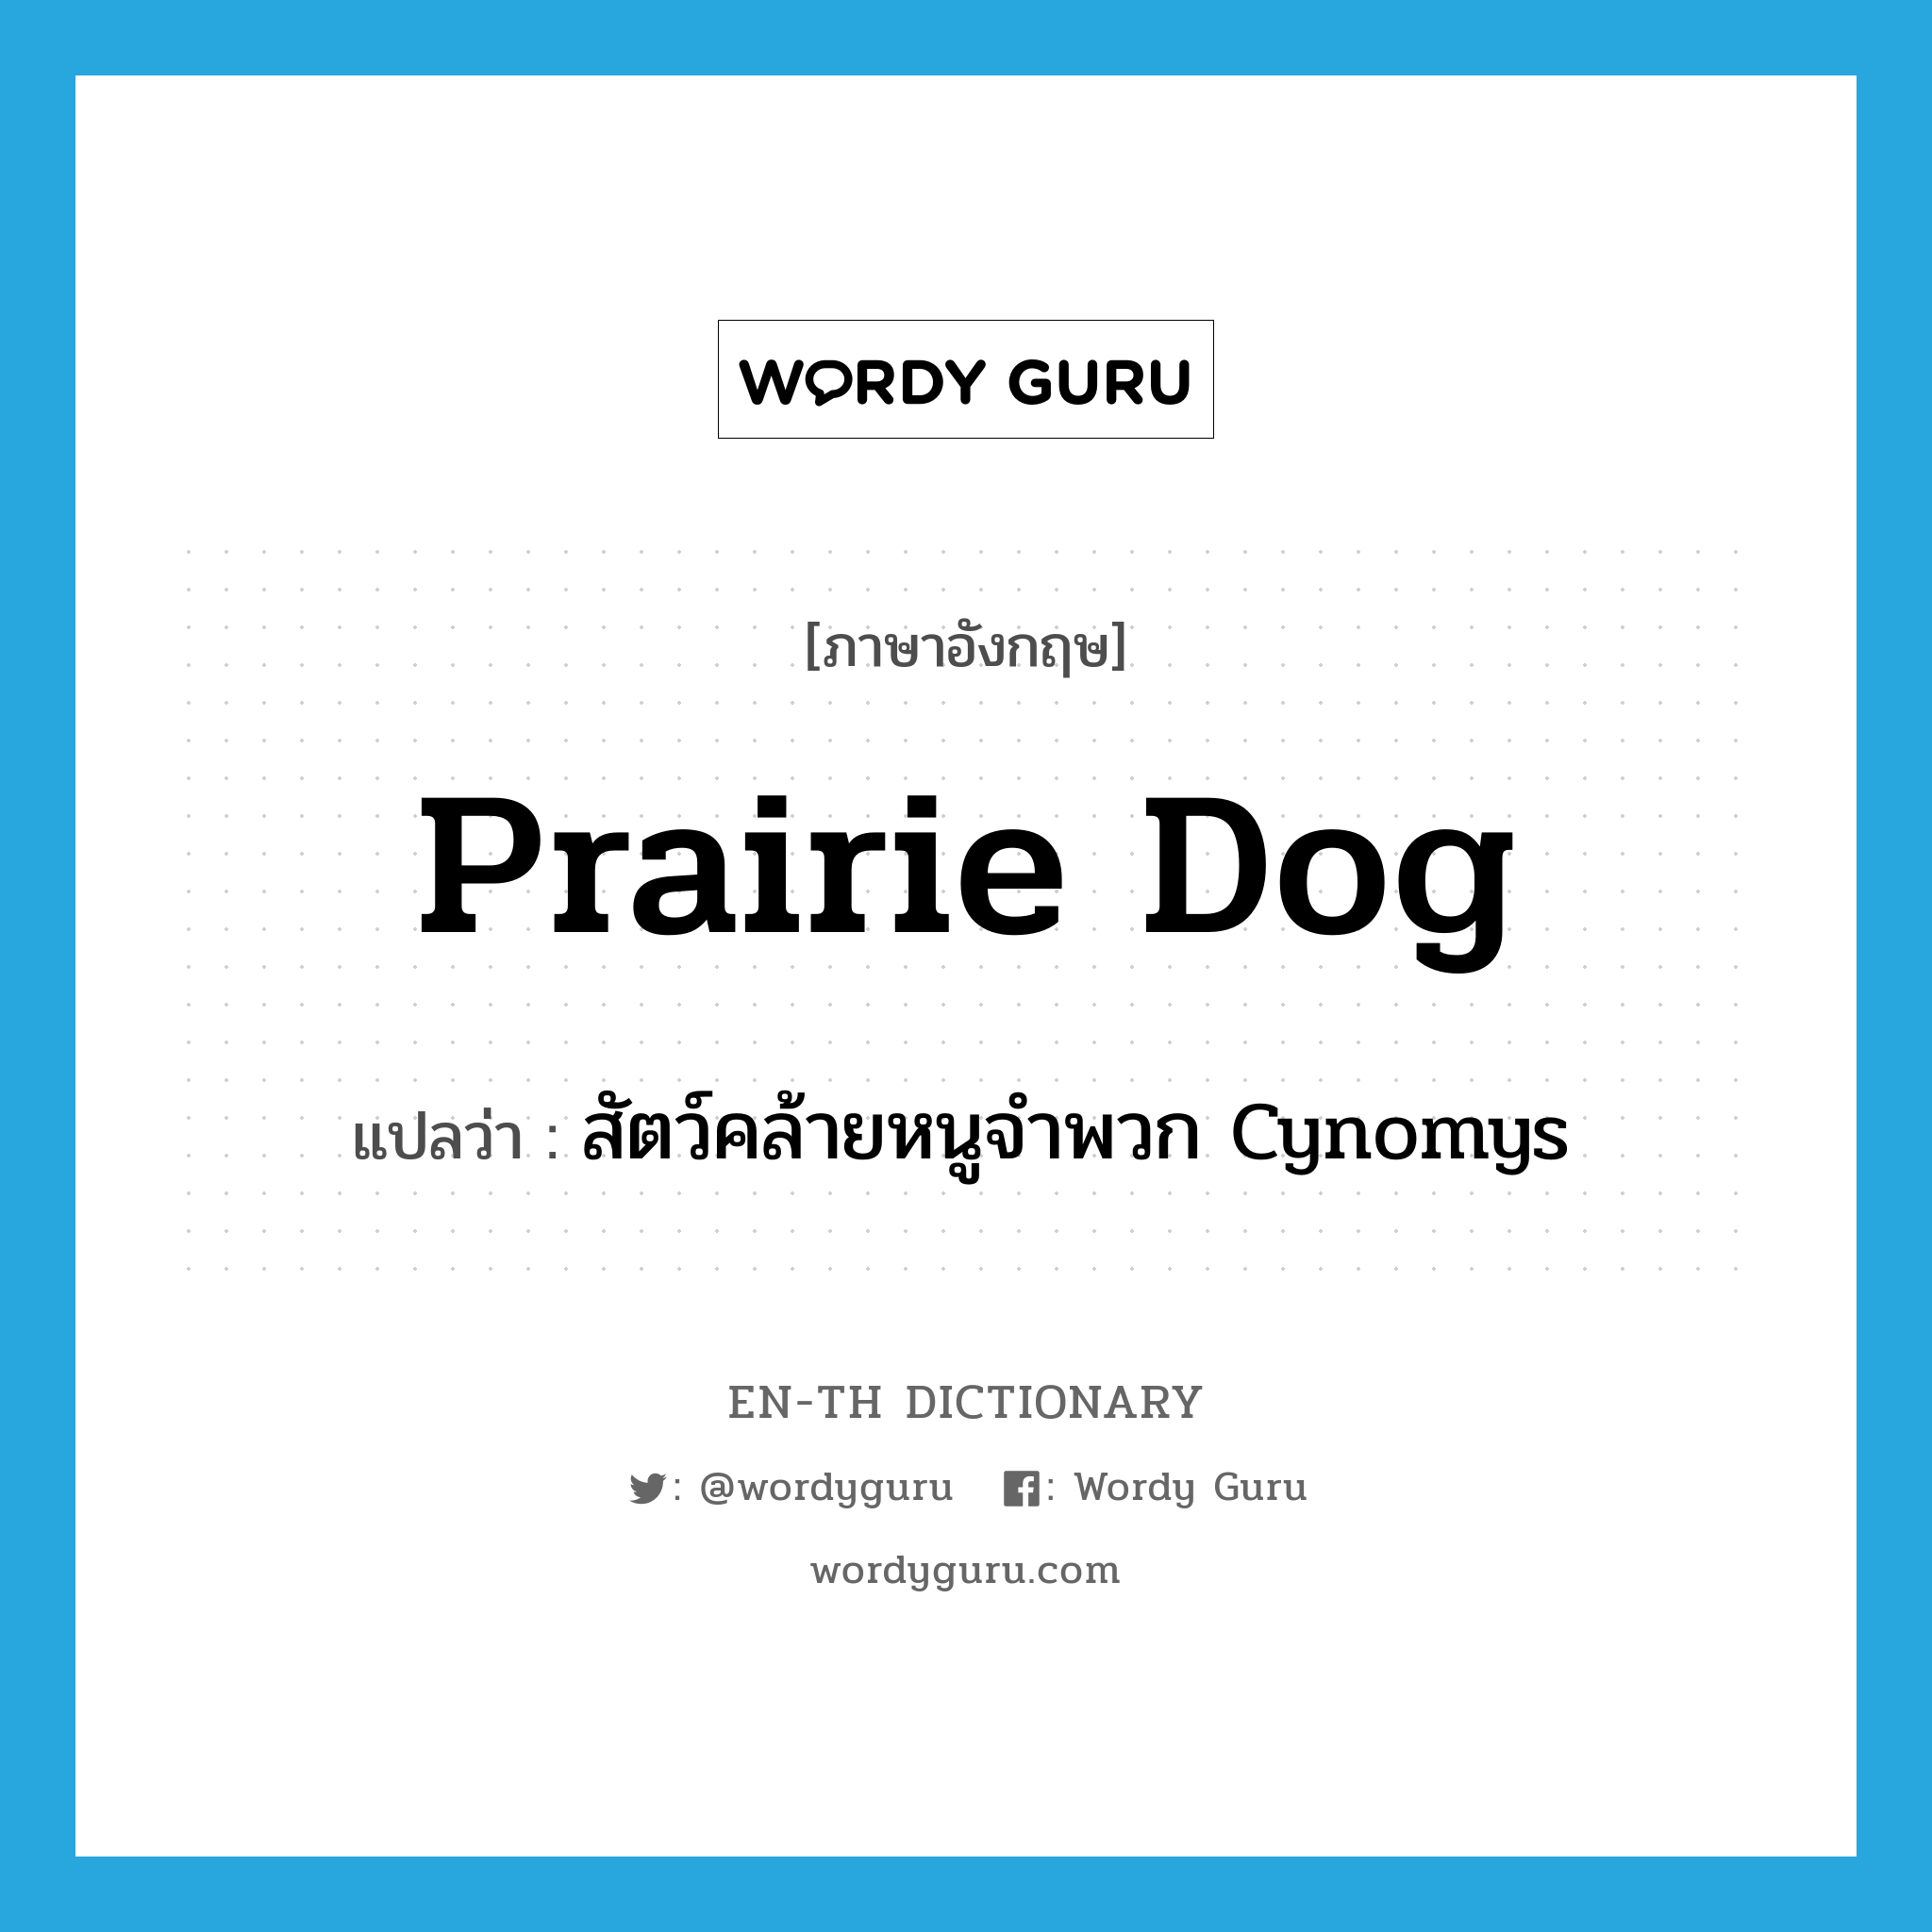 prairie dog แปลว่า?, คำศัพท์ภาษาอังกฤษ prairie dog แปลว่า สัตว์คล้ายหนูจำพวก Cynomys ประเภท N หมวด N